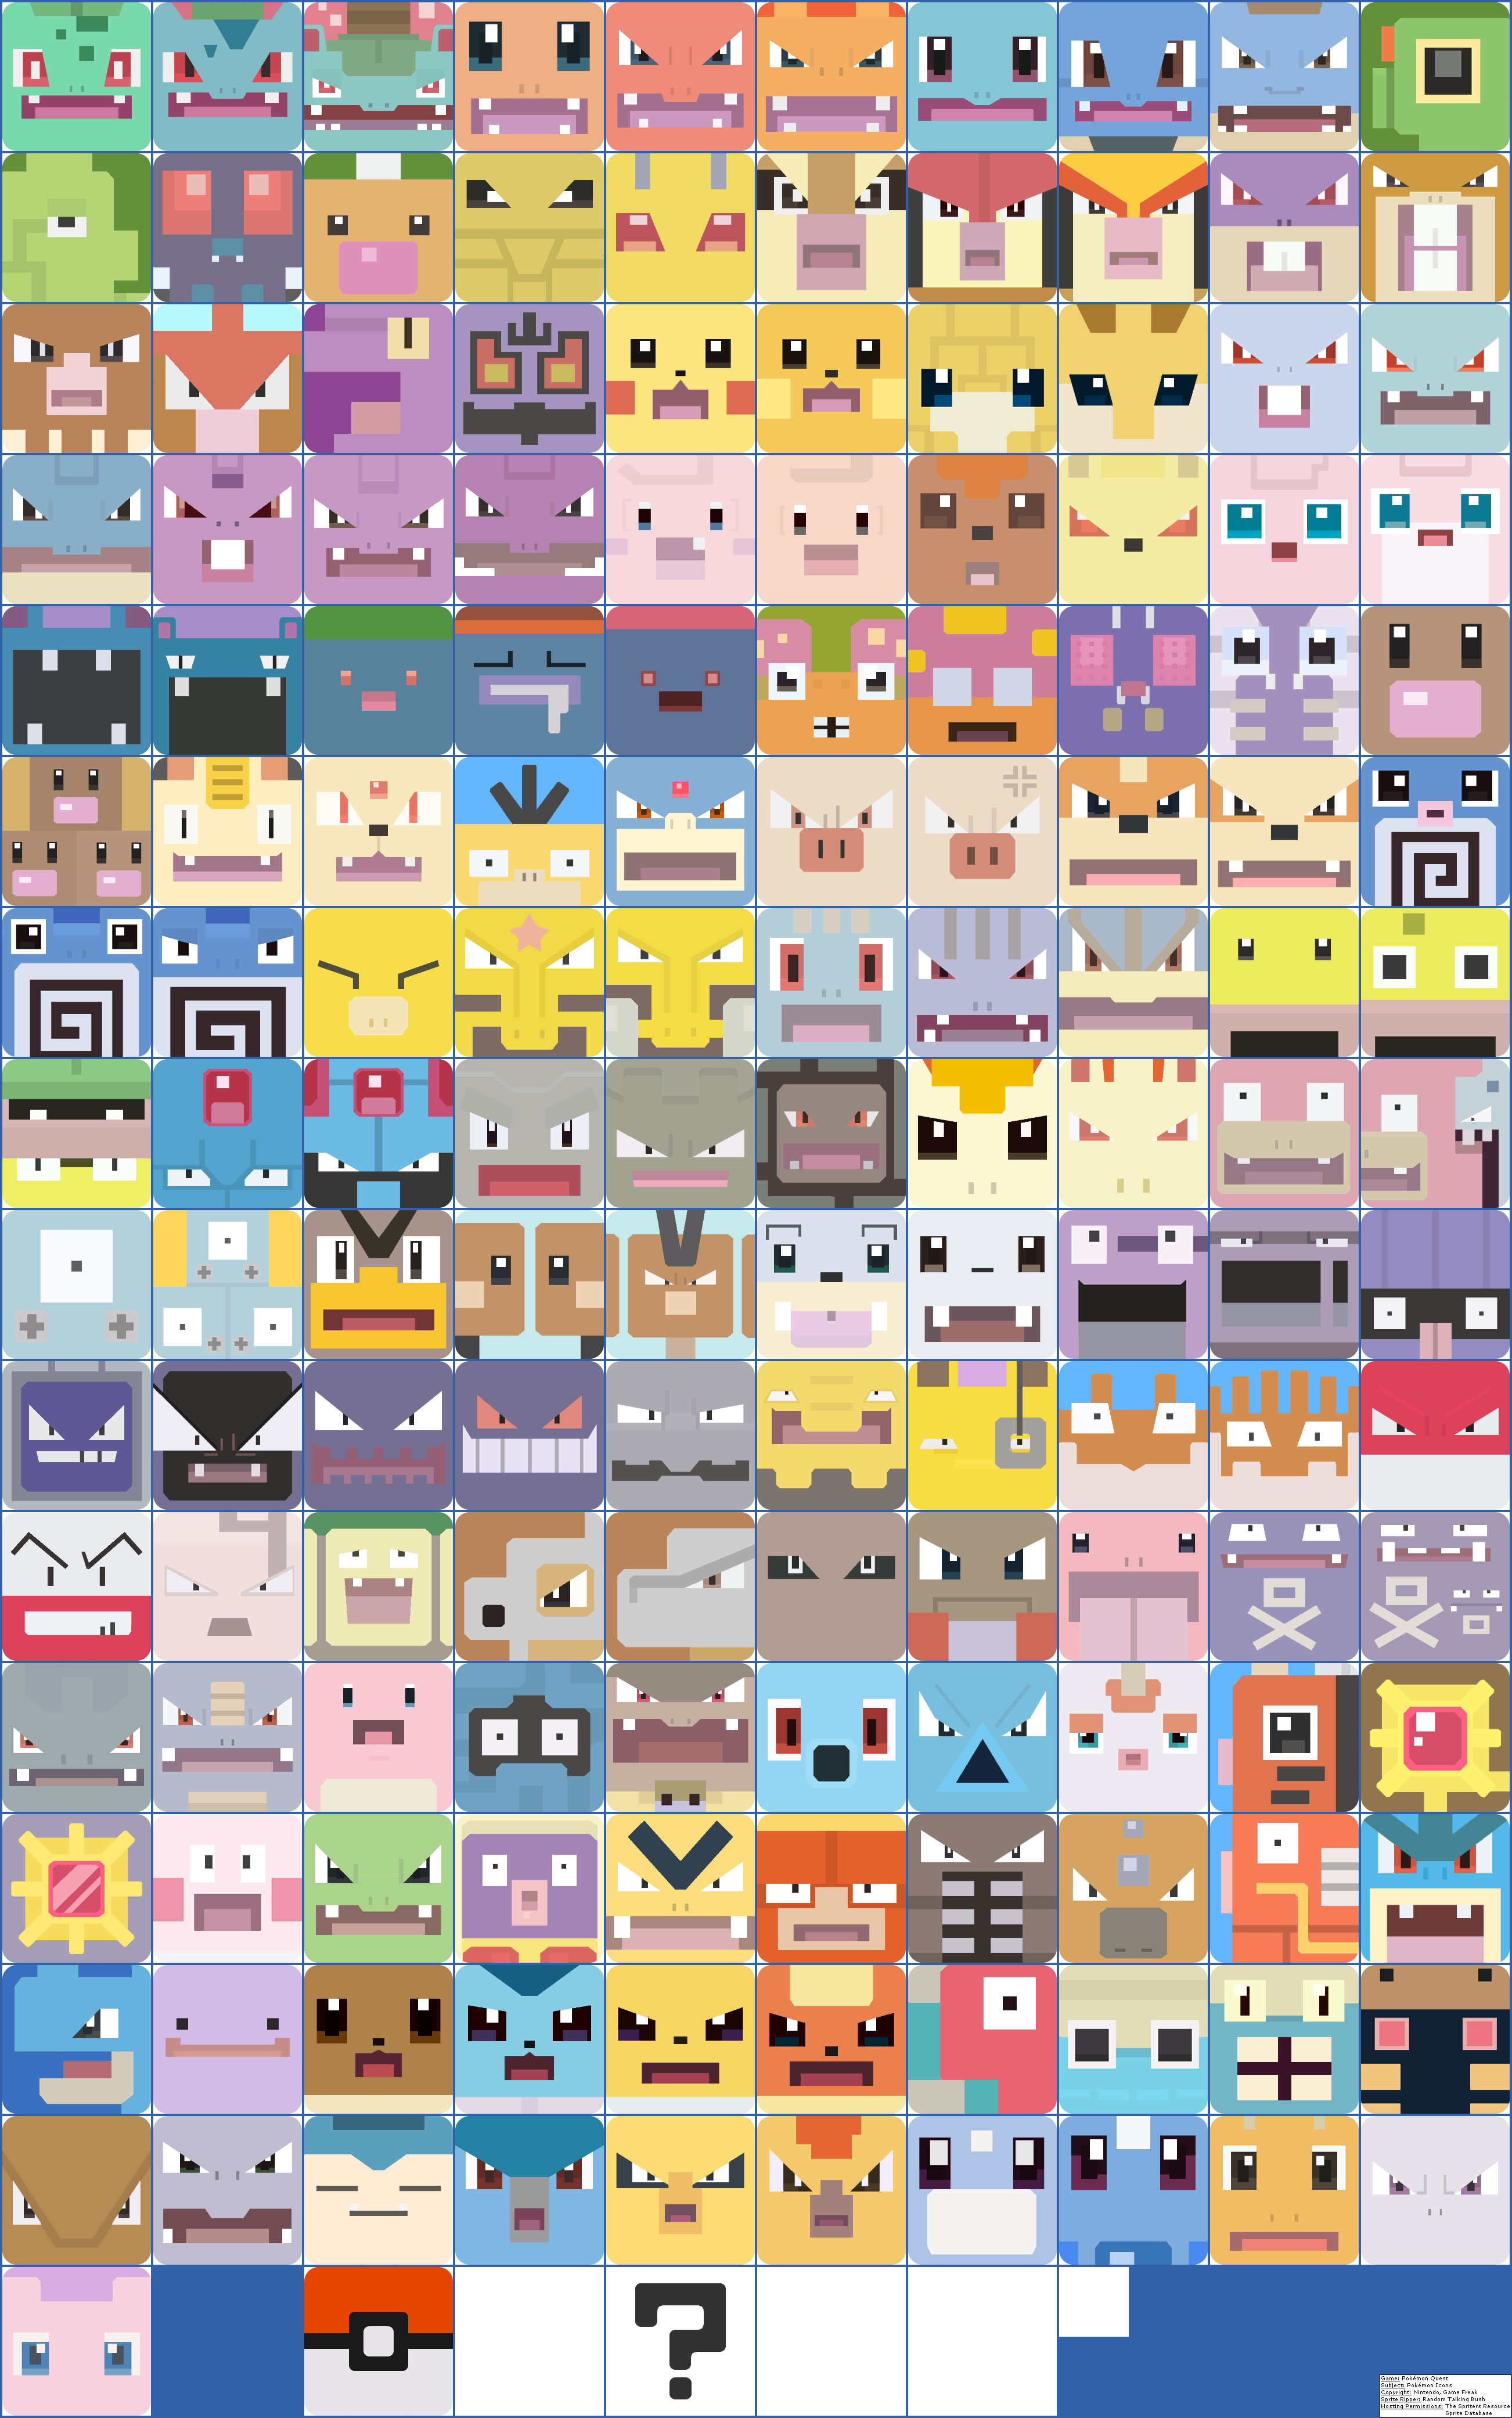 Pokémon Quest - Pokémon Icons